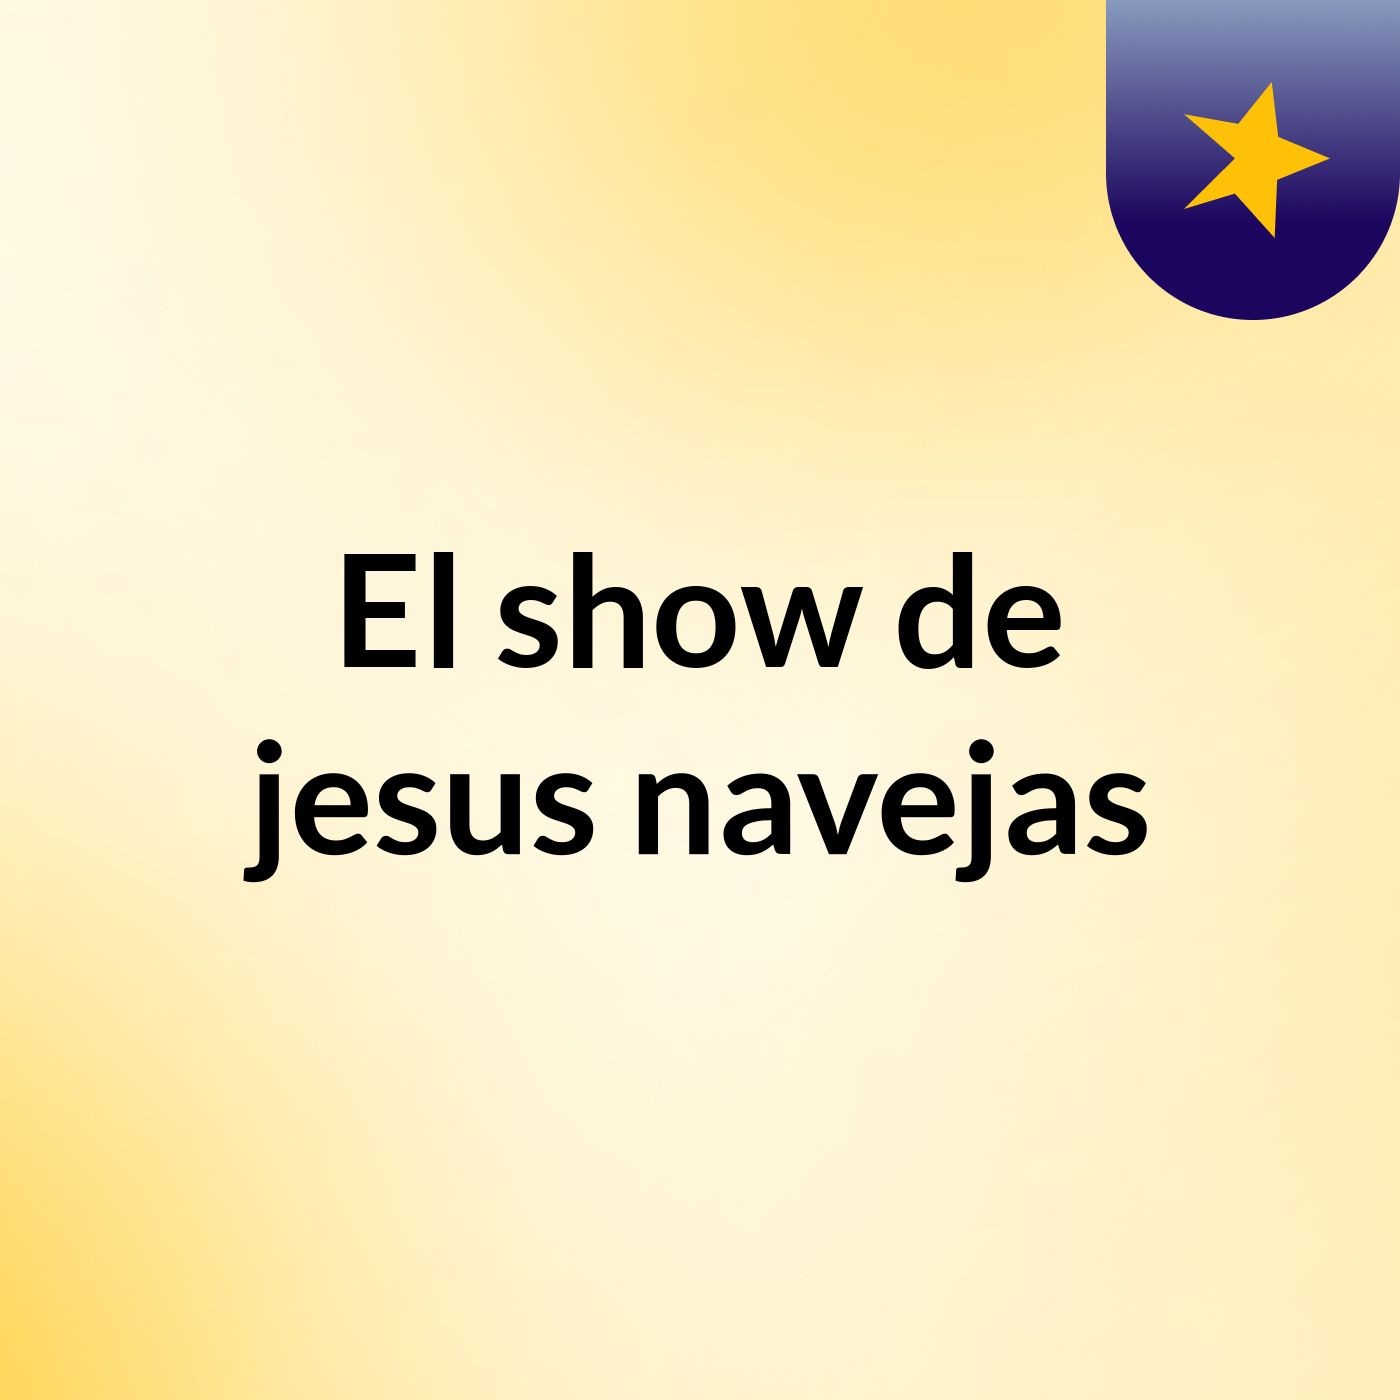 El show de jesus navejas